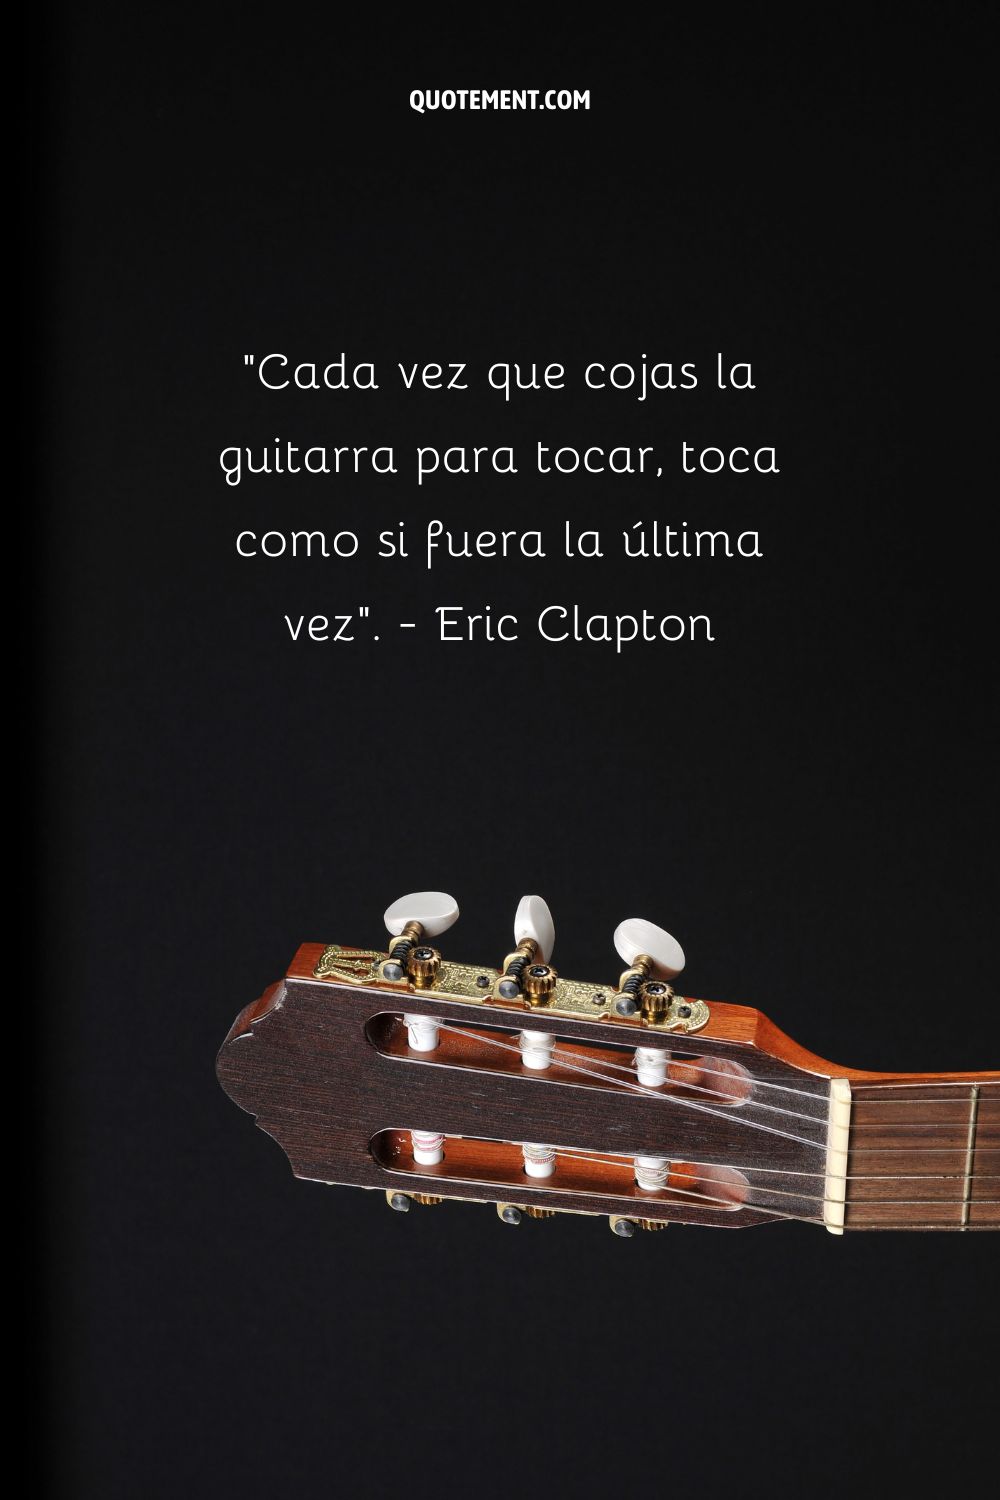 Cada vez que cojas la guitarra para tocar, hazlo como si fuera la última vez". - Eric Clapton